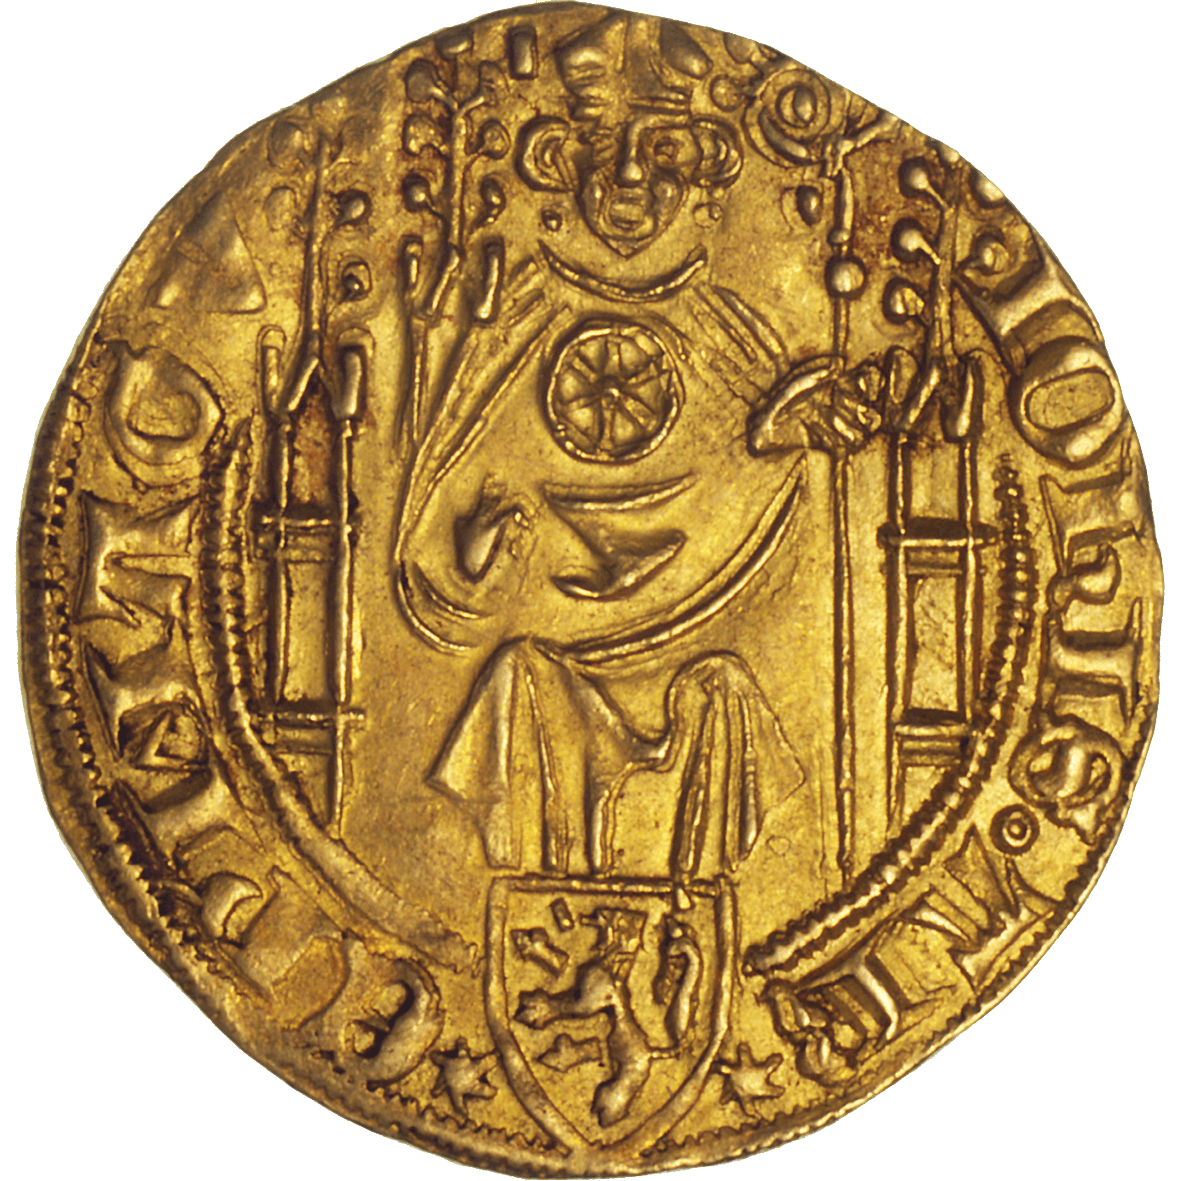 Holy Roman Empire, Archbishopric Mainz, Johann II of Nassau, Goldgulden (obverse)